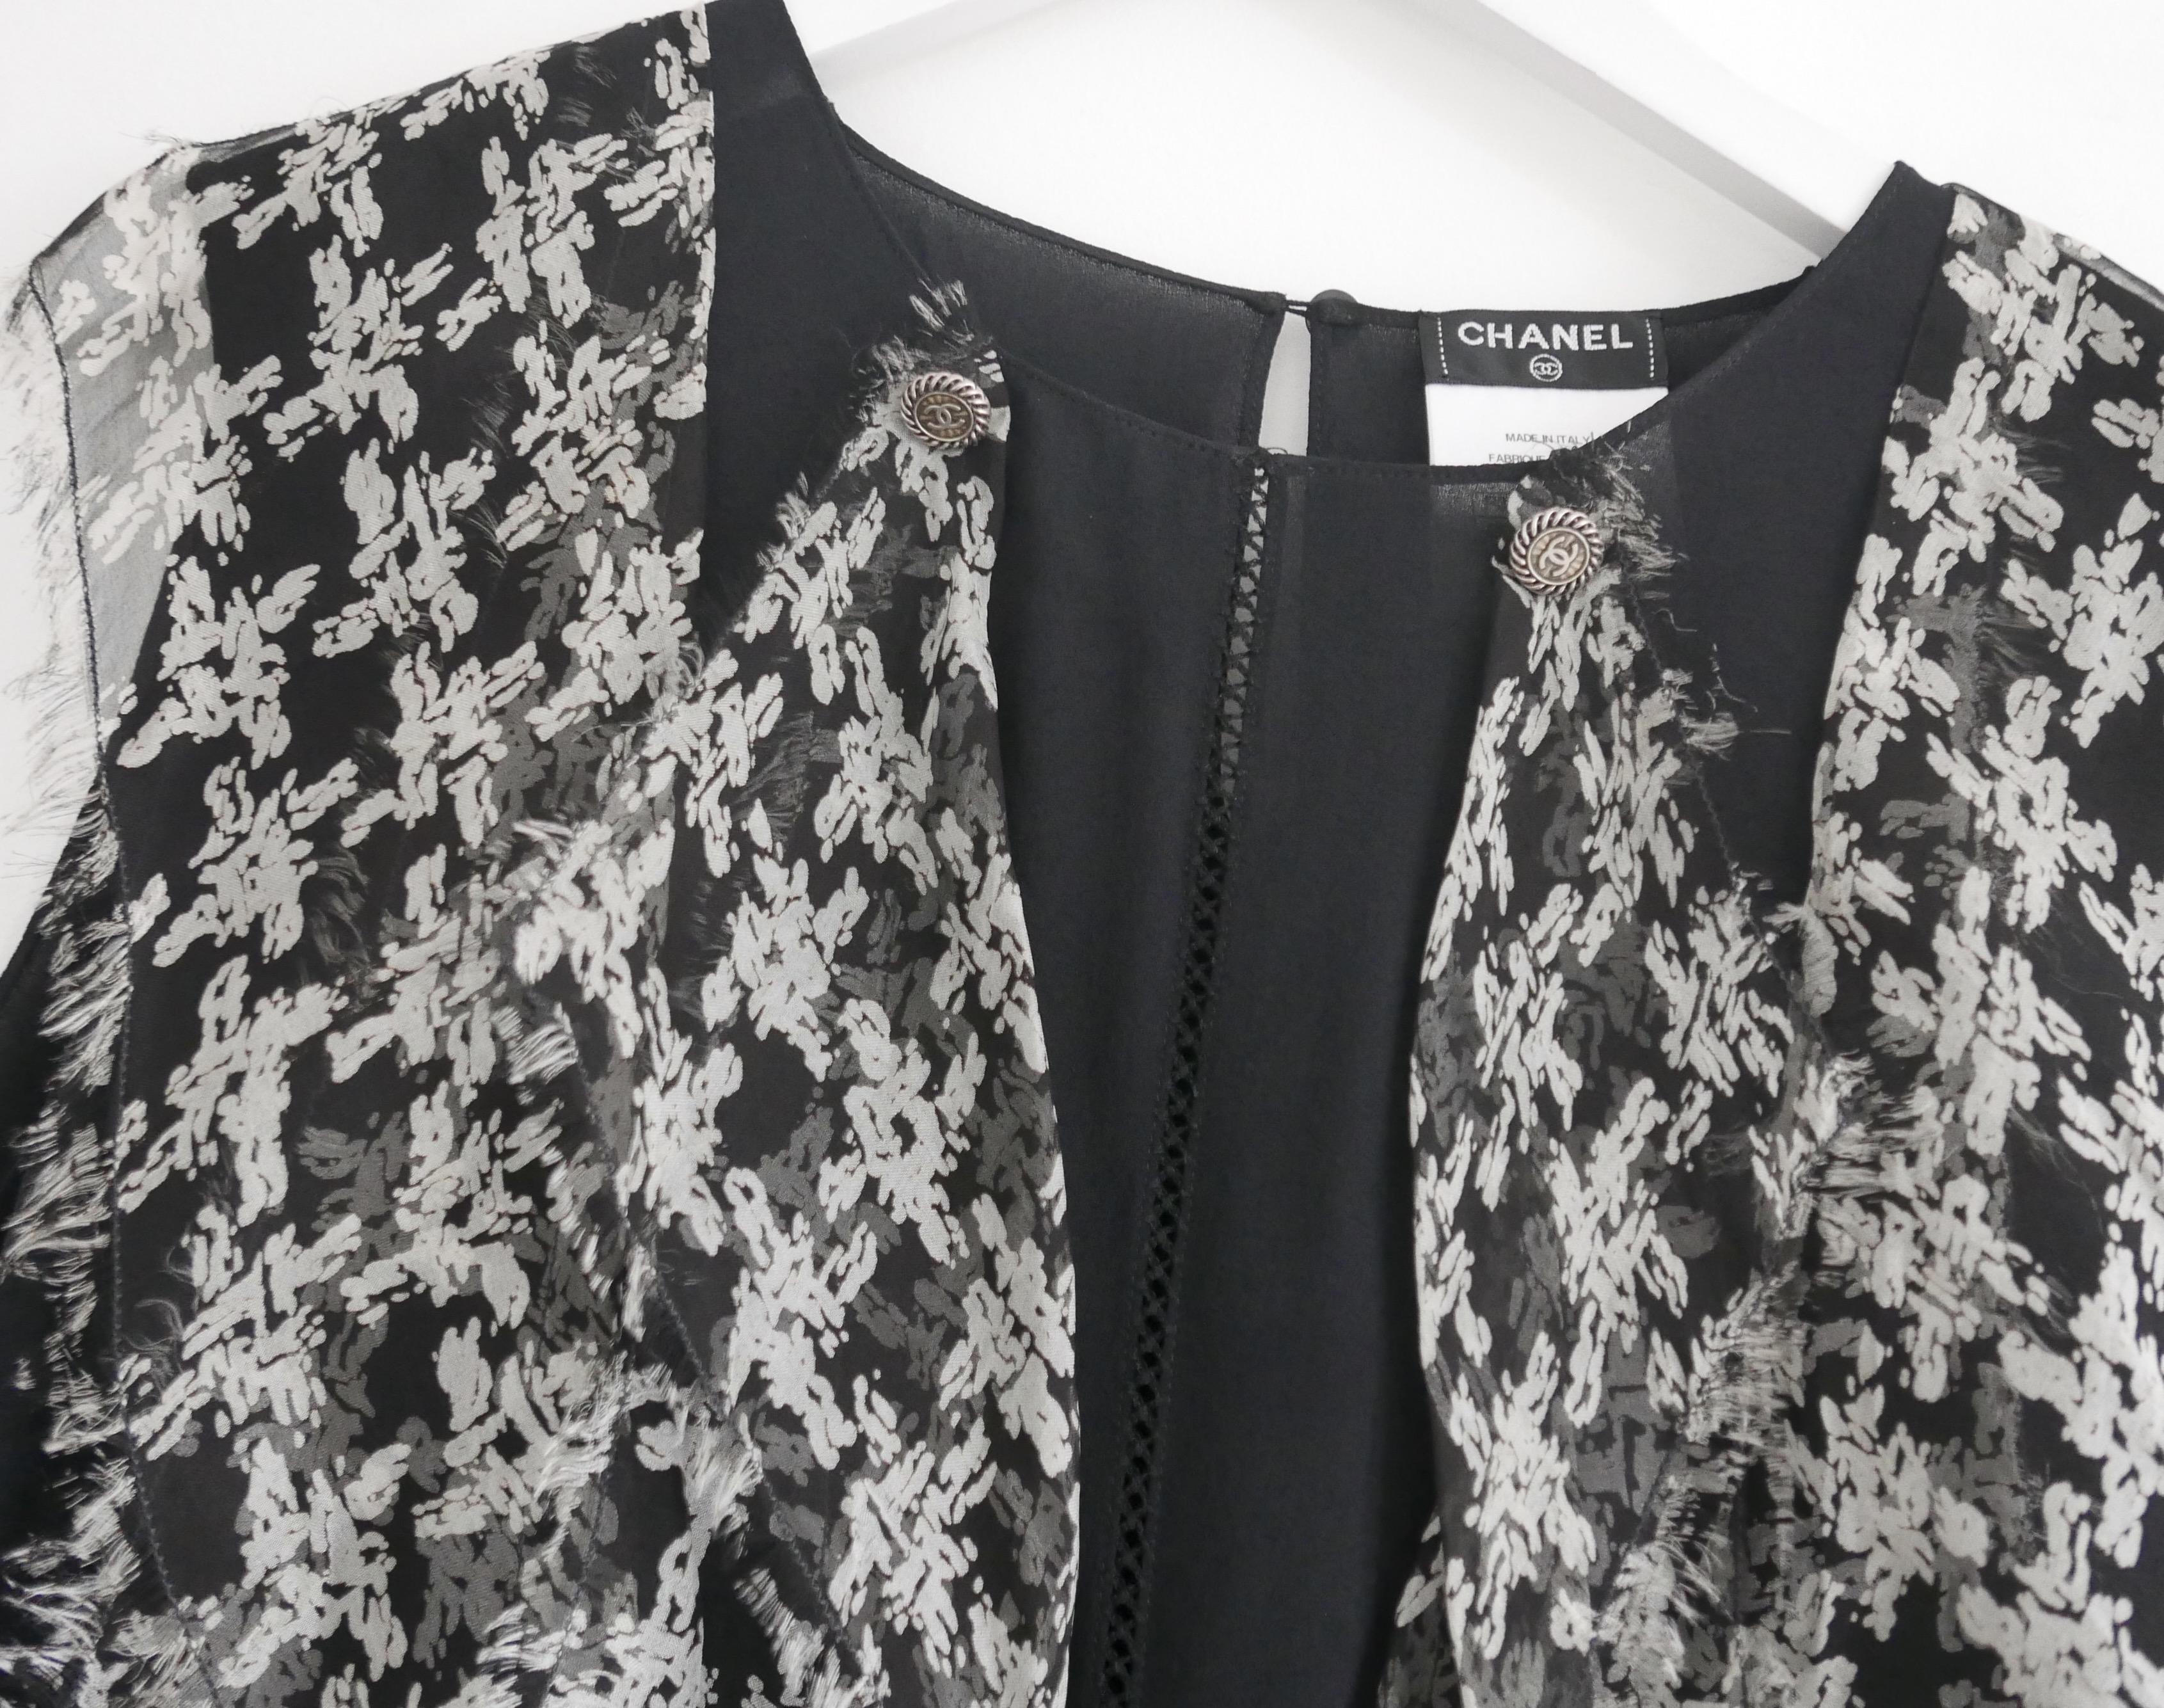 Magnifique blouse Chanel de la Collectional Printemps 2010. Non portés.
Confectionnée en soie noire mate, elle est ornée sur le devant de volants de soie à l'imprimé pied-de-poule à bords bruts et mousseux. Il présente un fin tissage en échelle au